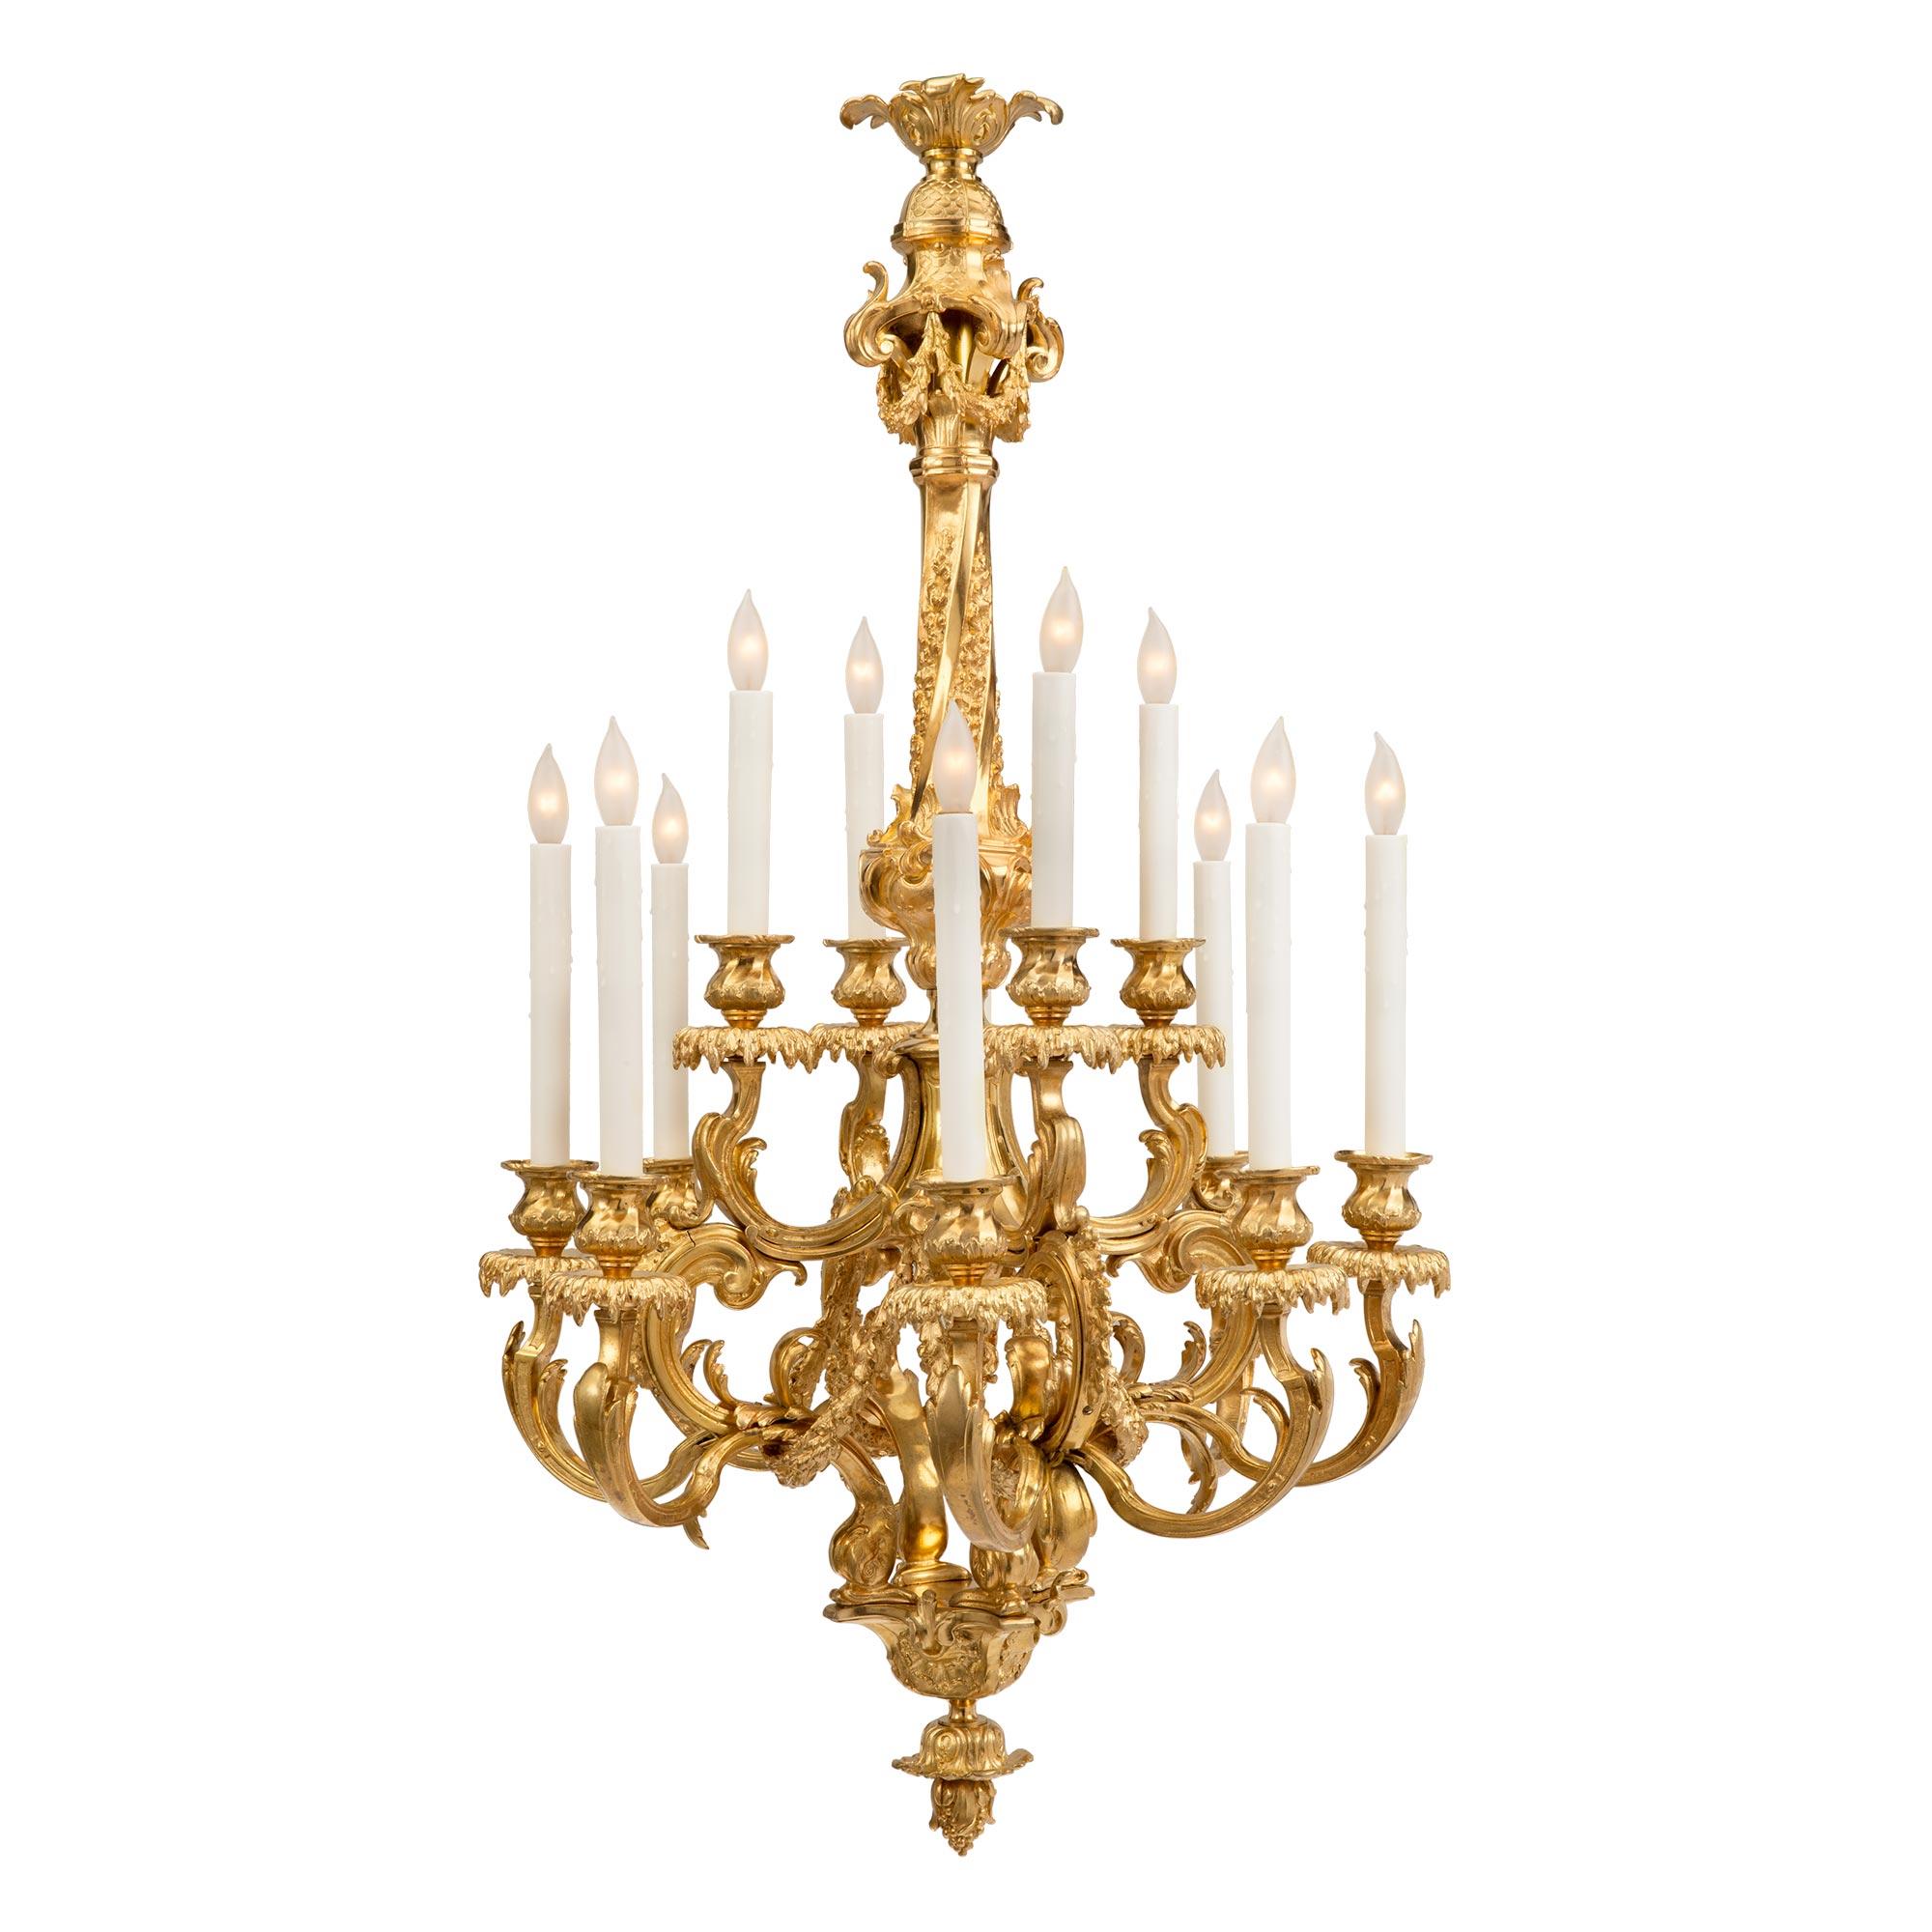 Un étonnant lustre français du 19ème siècle de style Louis XV en bronze doré à douze lumières. Le lustre est centré par un étonnant épi de faîtage à fond inversé, sous quatre dauphins richement ciselés. De la belle cage centrale partent les douze